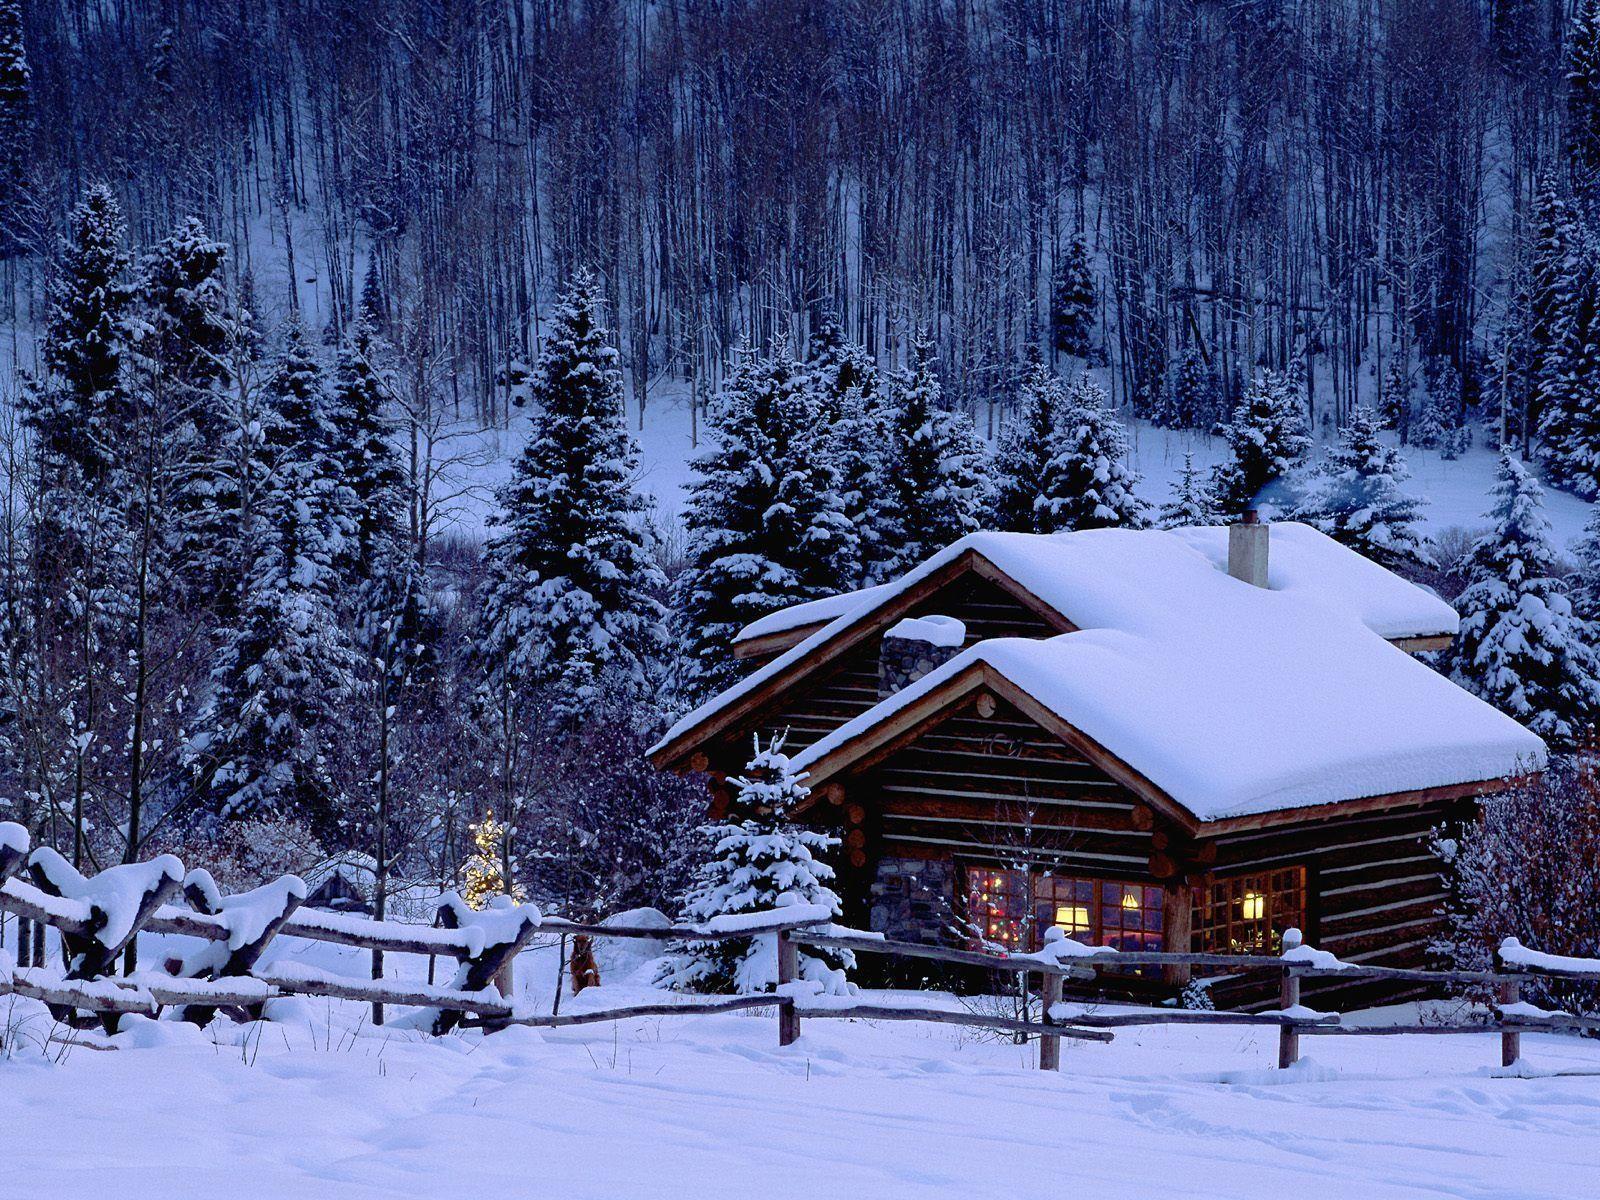 Winter HD Wallpaper. Winter Season Wallpaper Free Download